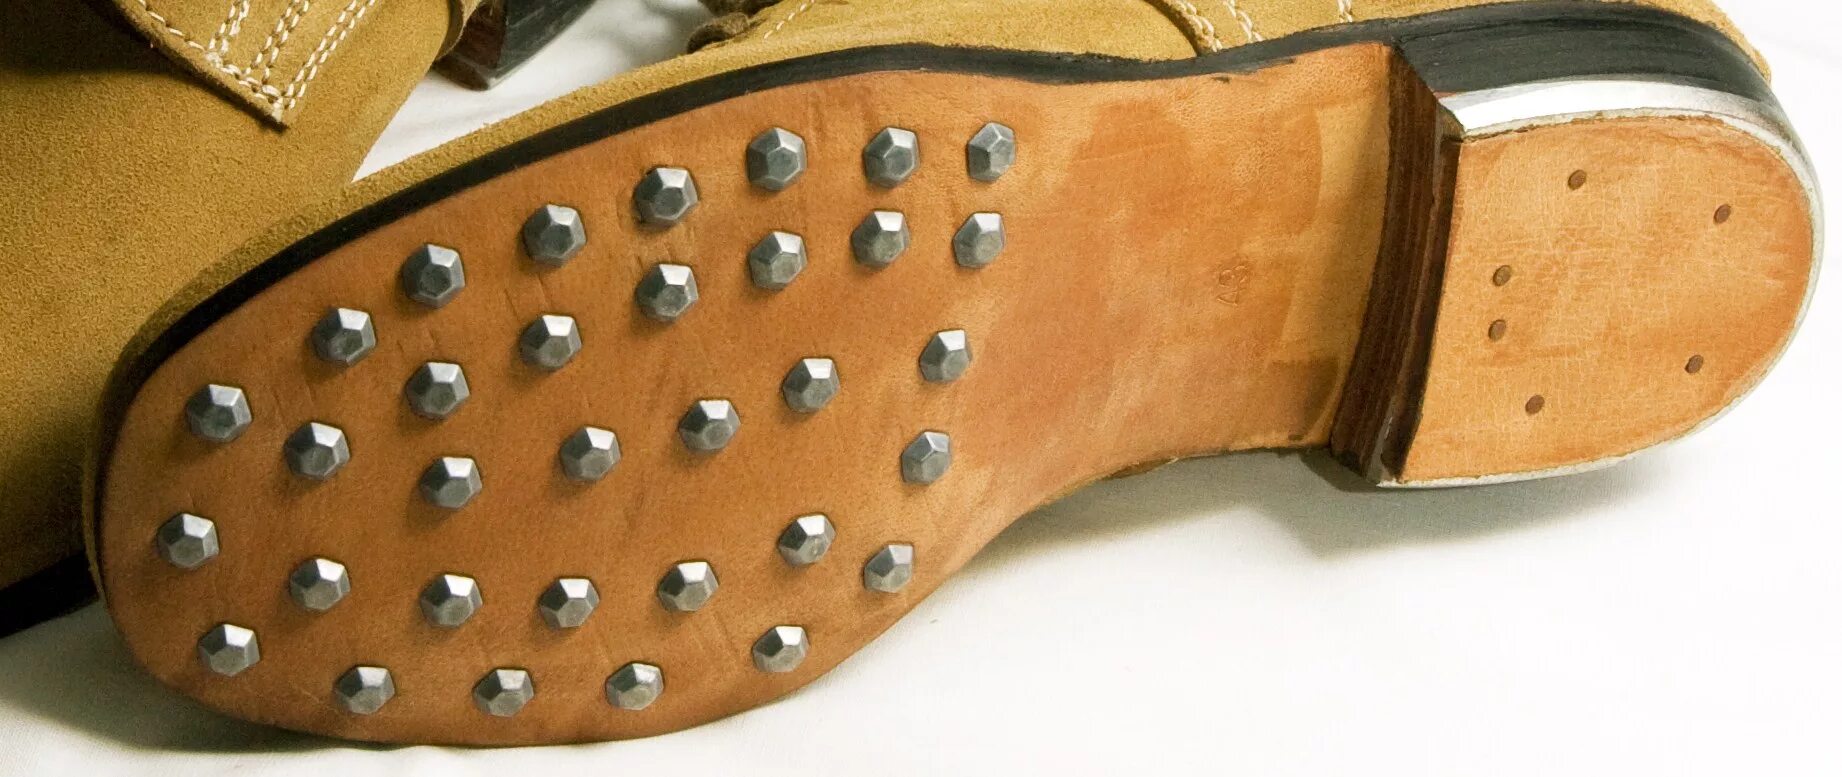 Обувь Петра 1. Сапоги Петра 1. Башмаки Петра 1. Ботинки с гвоздями на подошве. Зачем на подошве